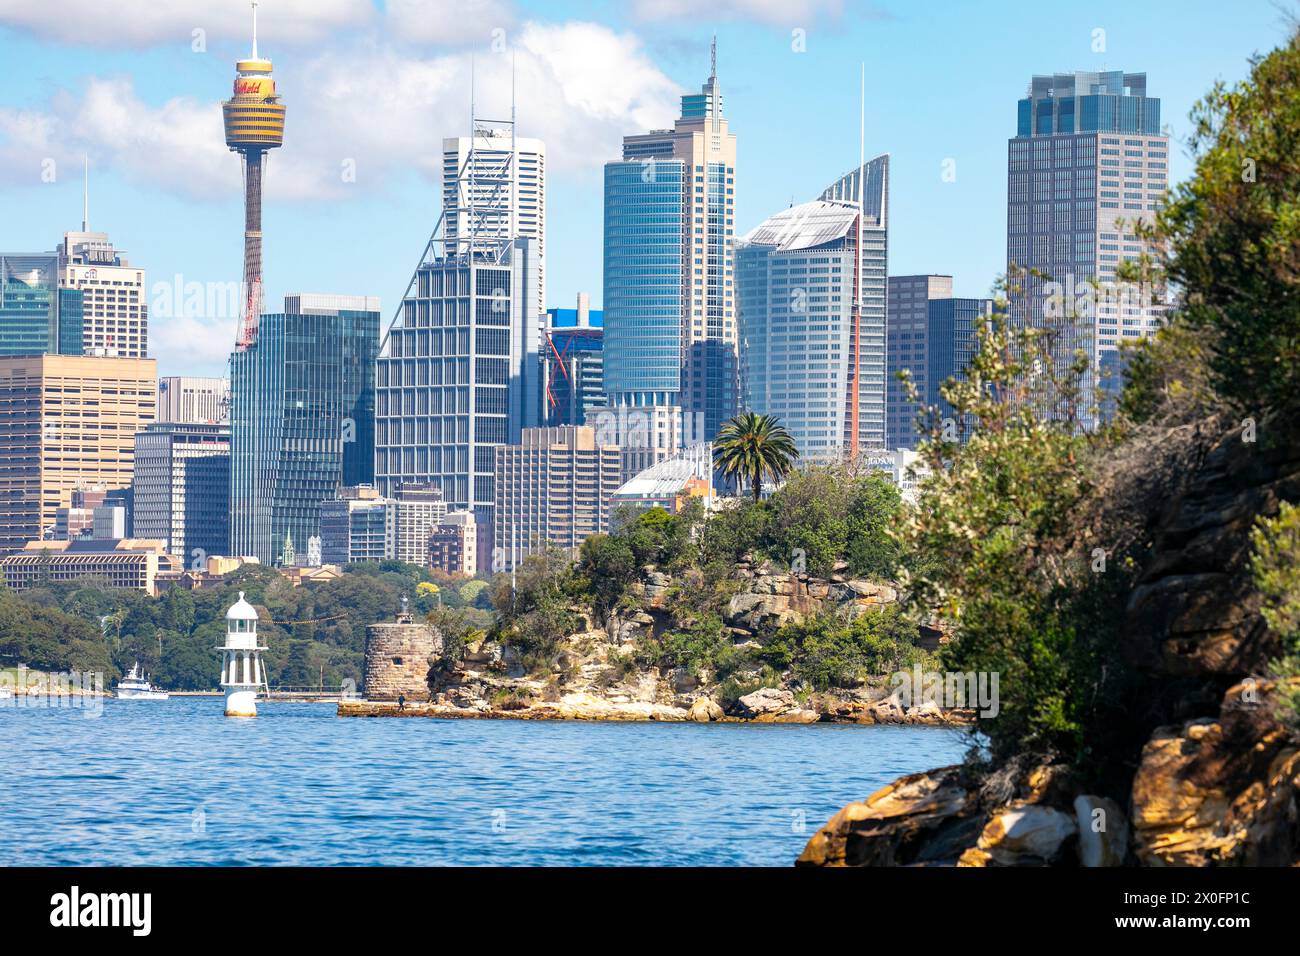 Il centro di Sydney e lo skyline del CBD, Fort Denison e Cremorne Point con il faro di Robertsons Point visibile, il paesaggio urbano di Sydney e l'alto edificio dell'Australia Foto Stock